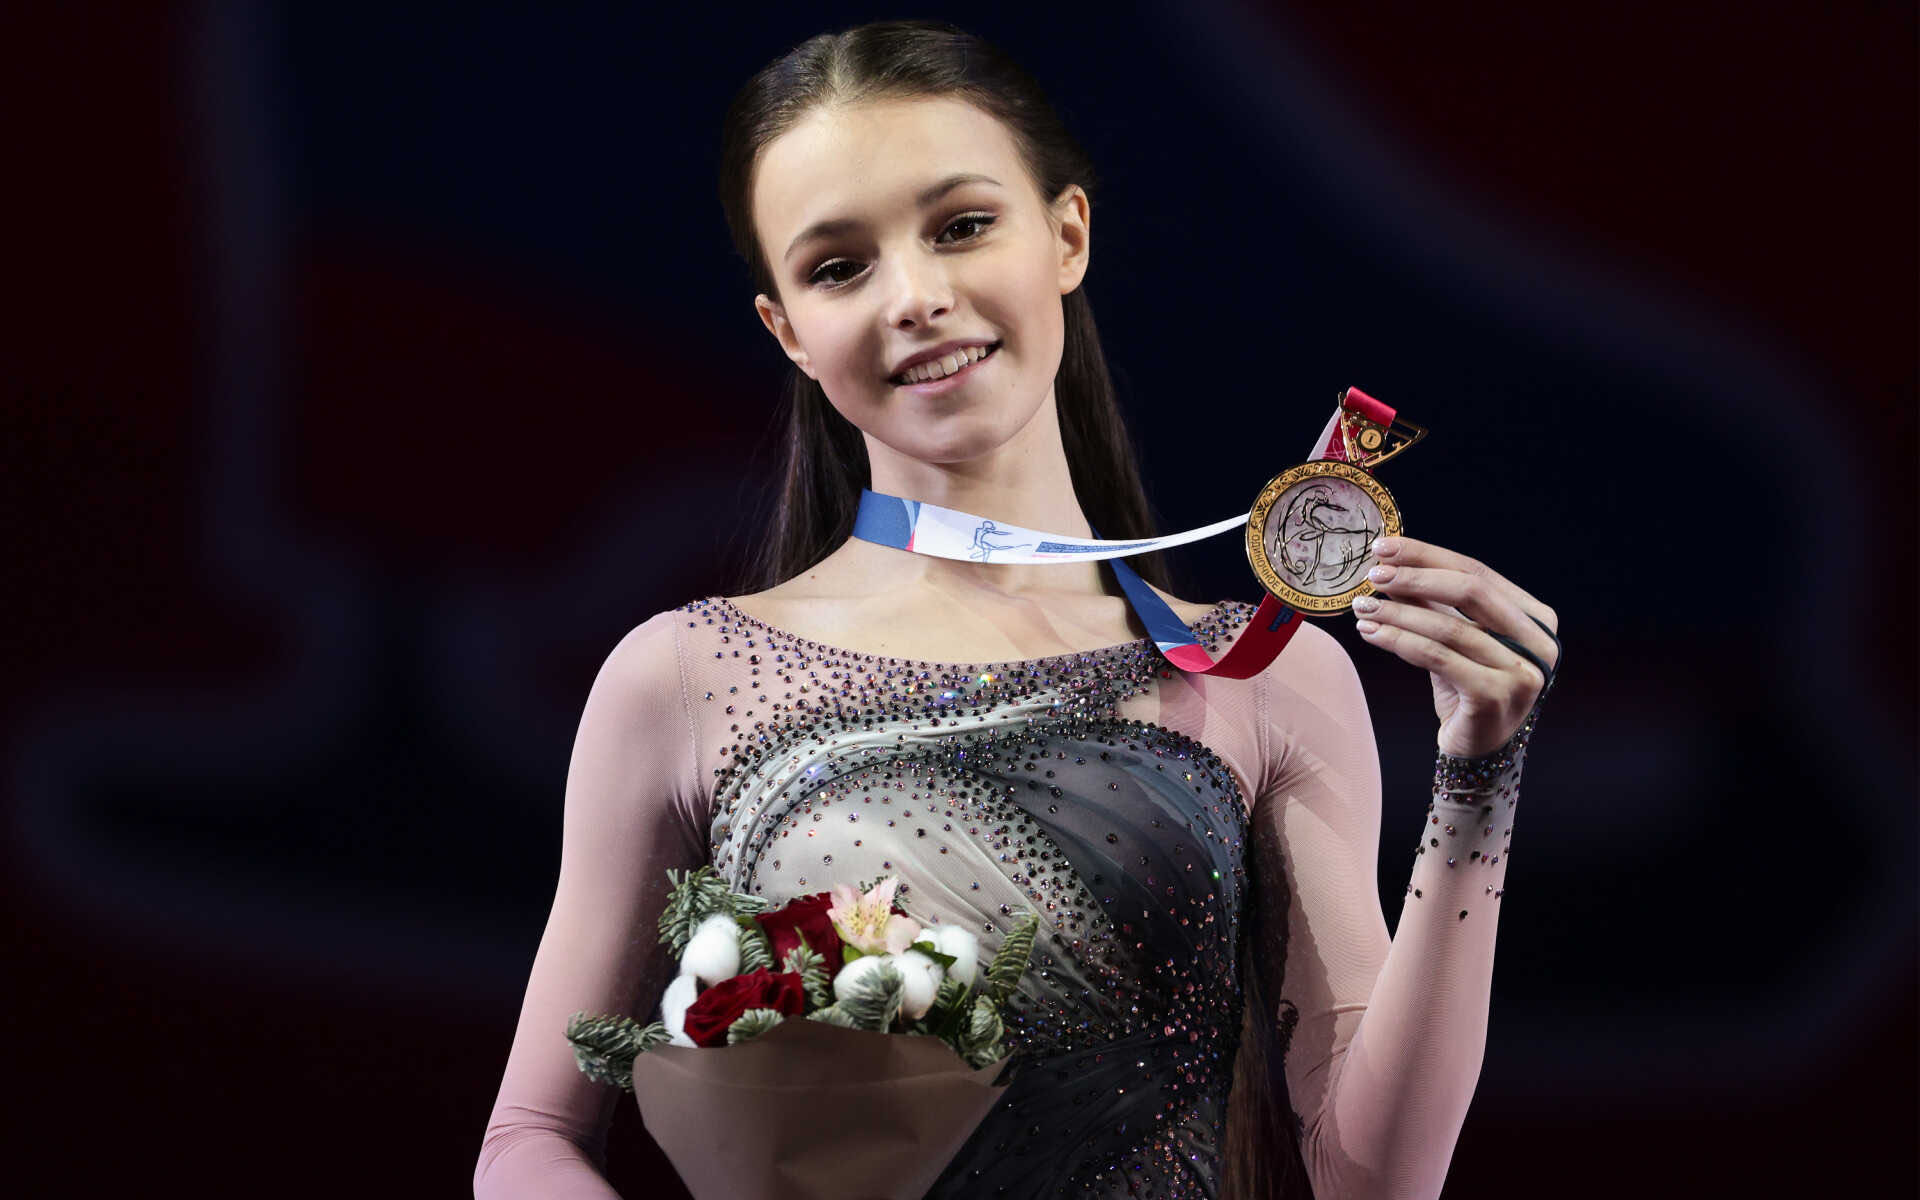 Олимпийская чемпионка Анна Щербакова призналась, что почувствовала, когда объявили её результат на играх